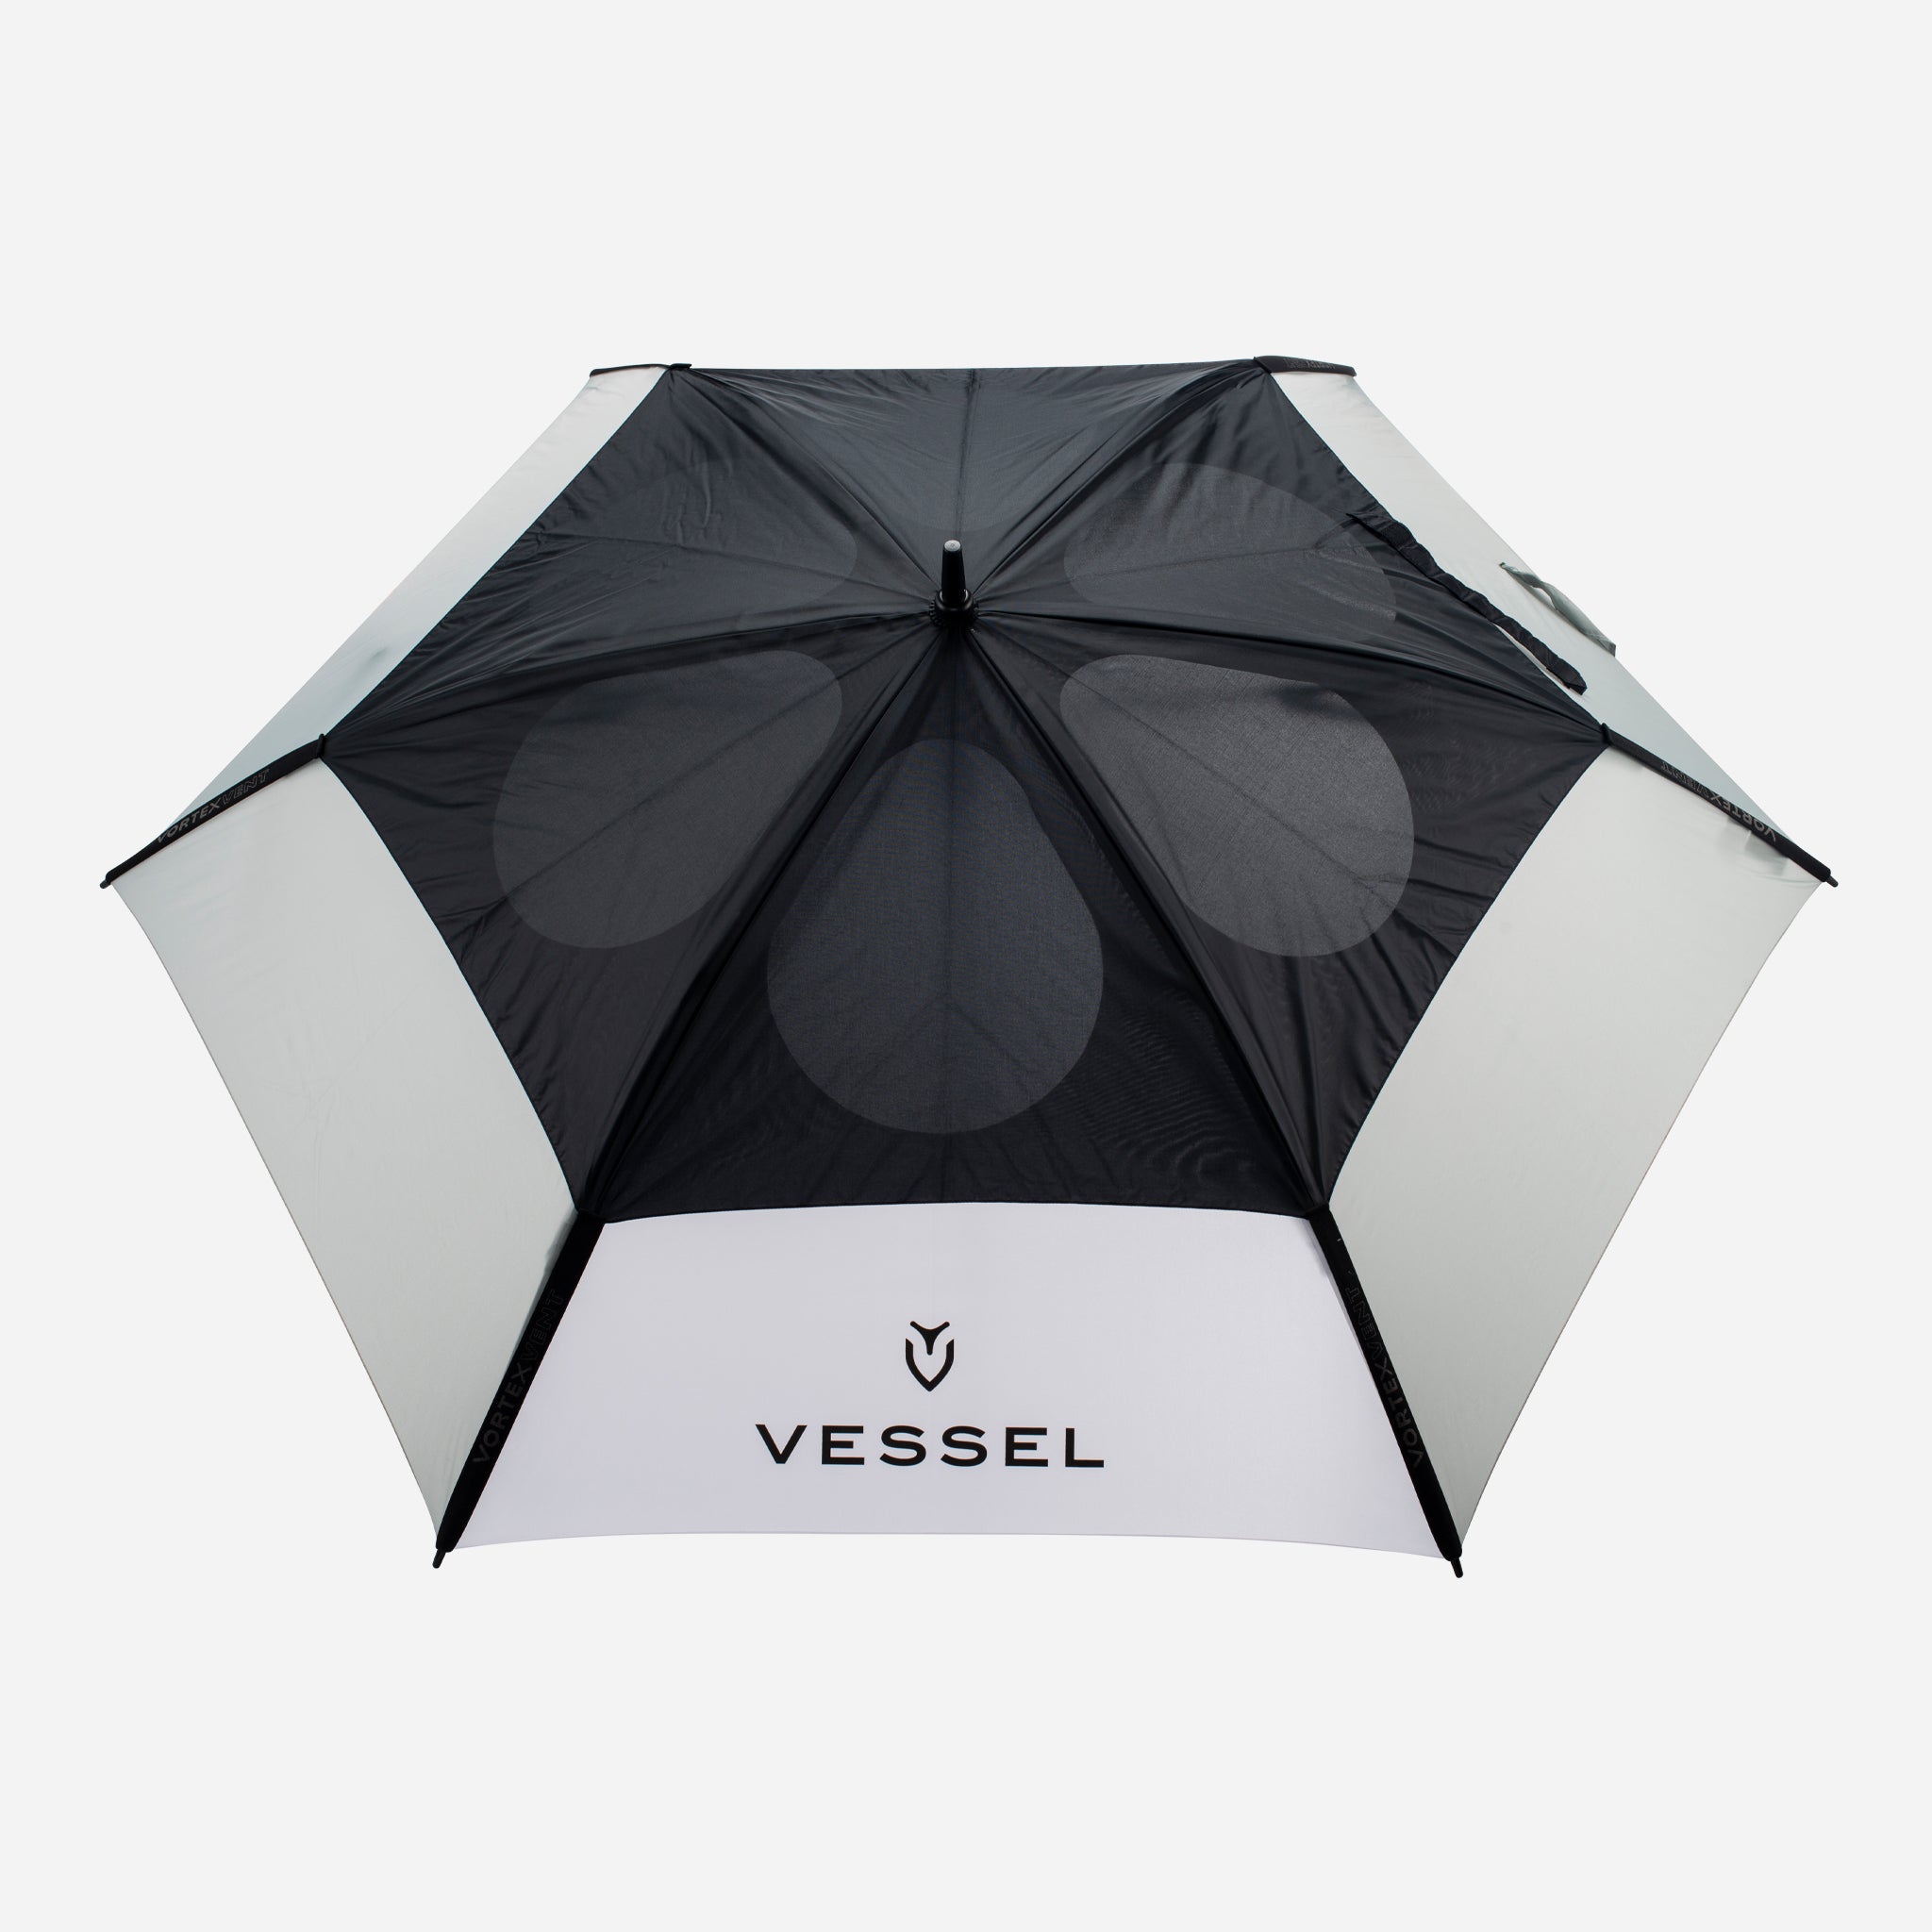 VESSEL Vortex Golf Umbrella, Golf Umbrella